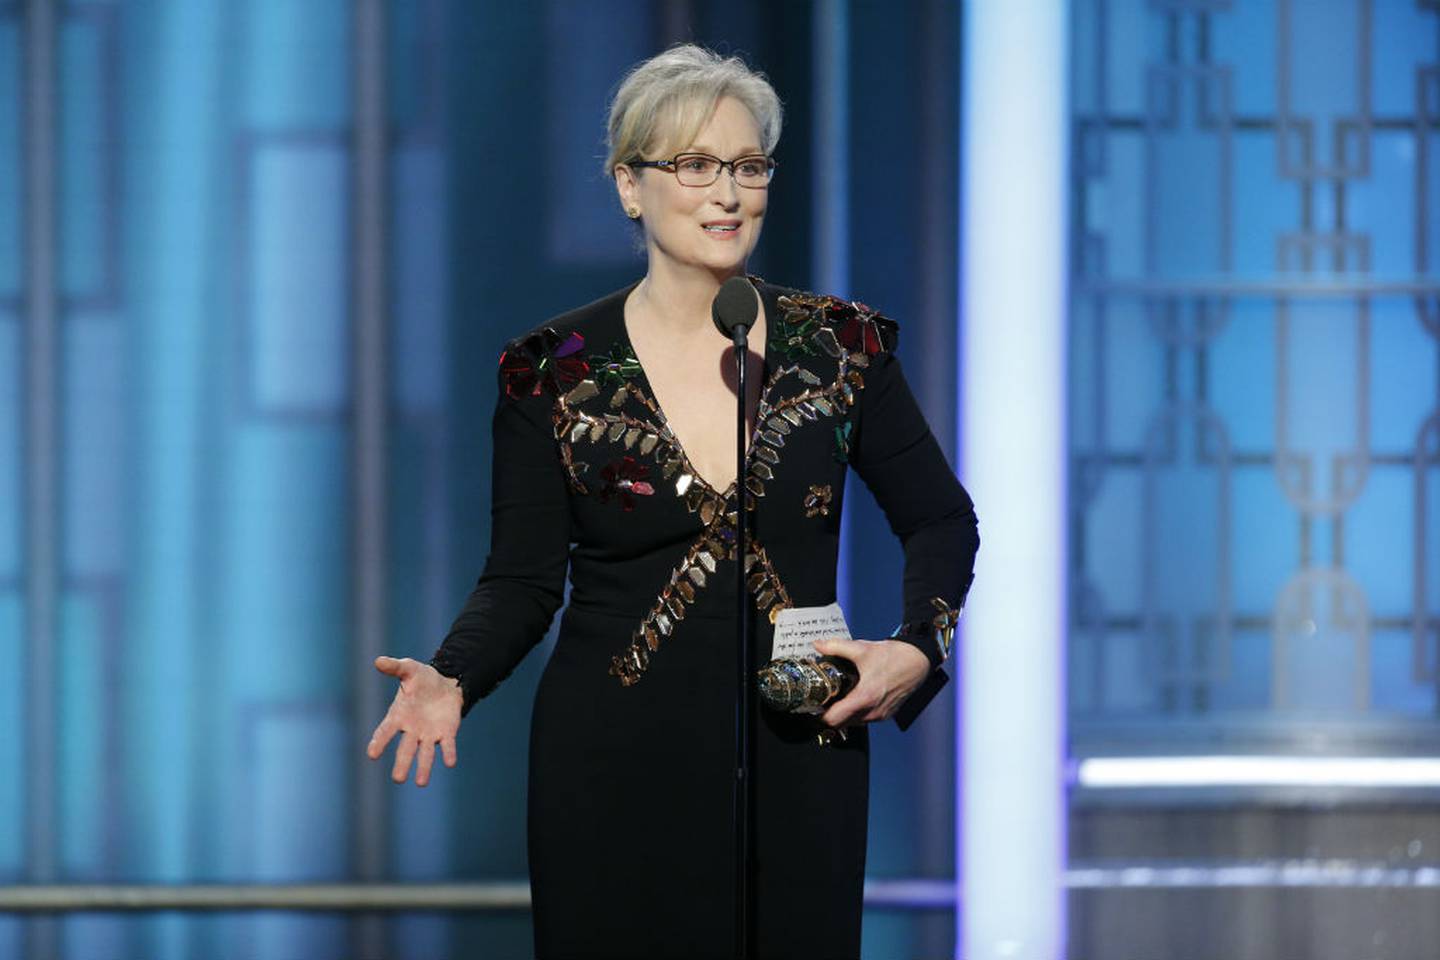 Meryl Streep pidió a sus compañeros de Hollywood cuidar la prensa ante lo expresado por Trump